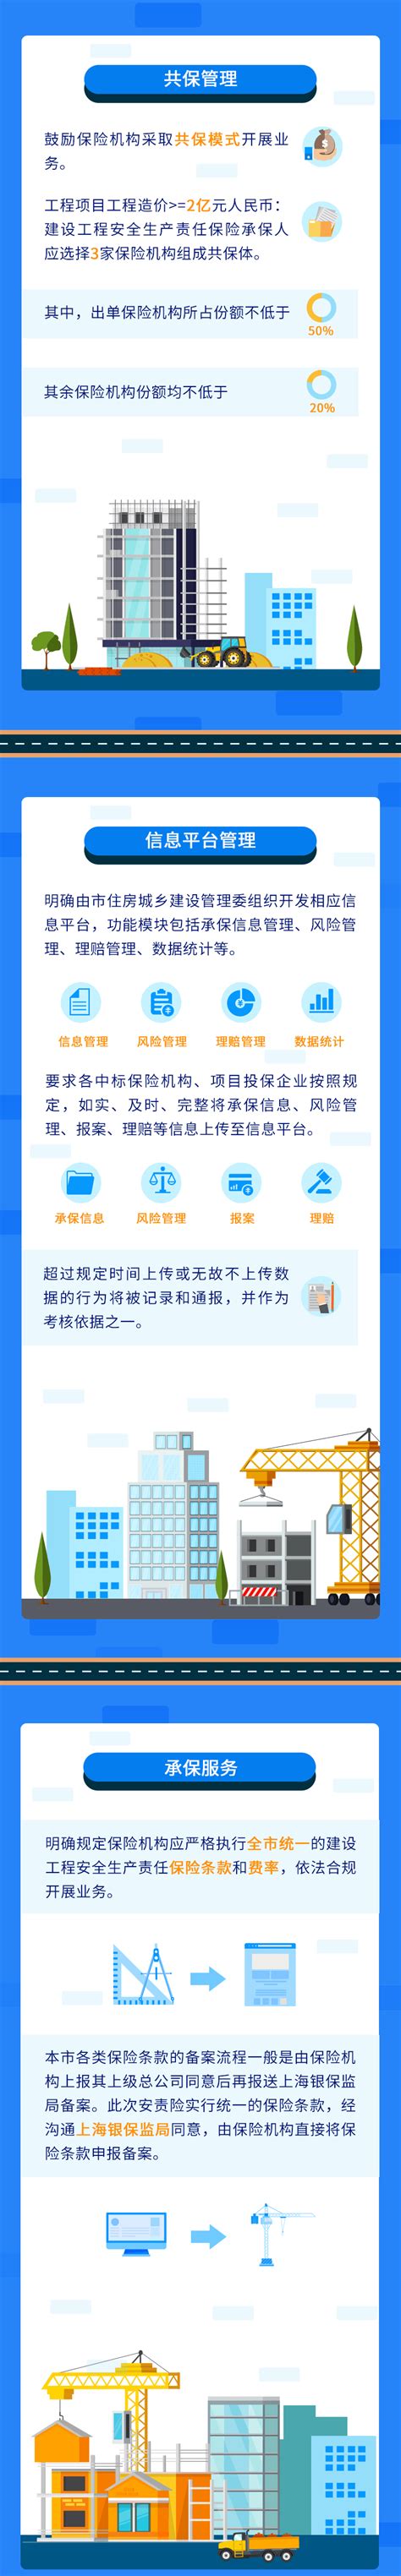 上海市建设安全监督官网